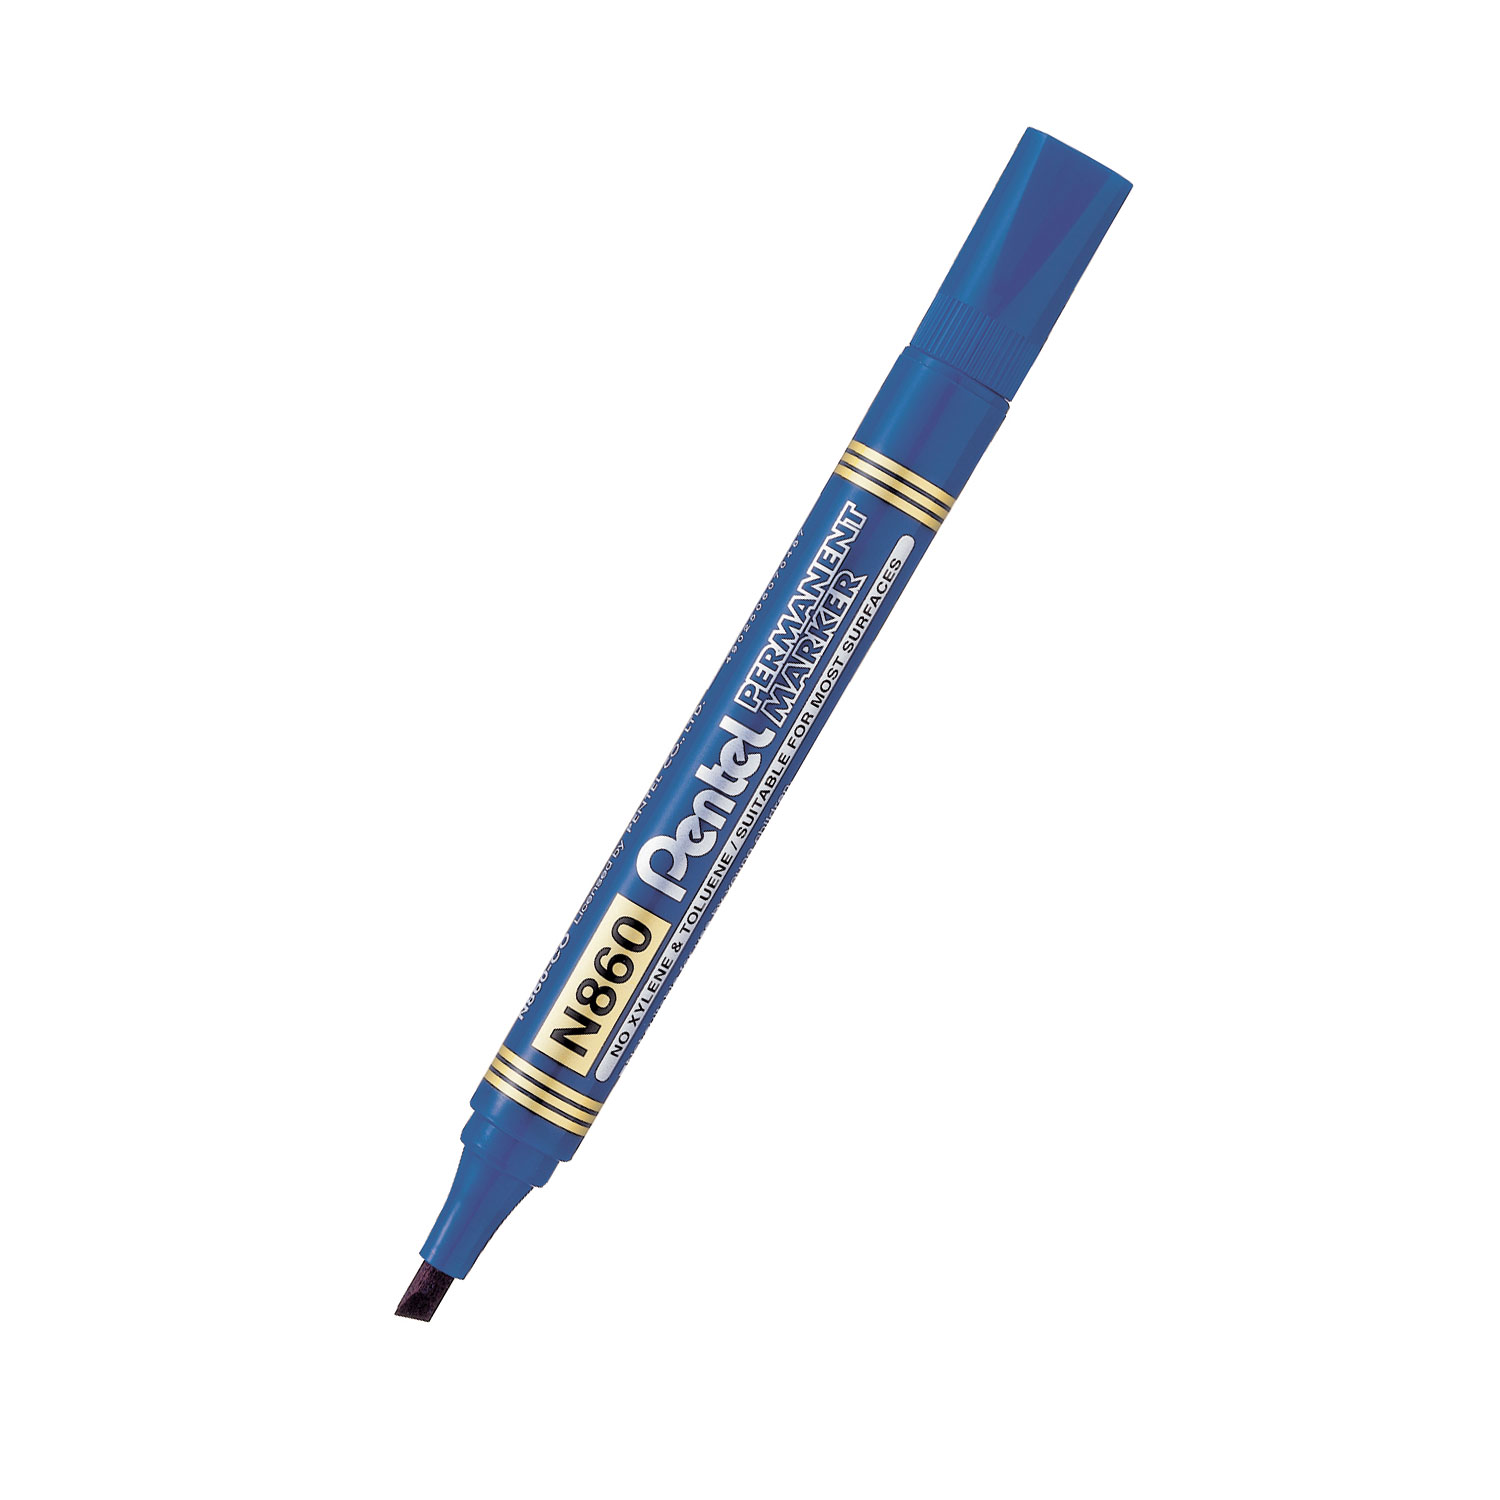 Popisovač Pentel Permanent Marker N860, permanentní, modrý